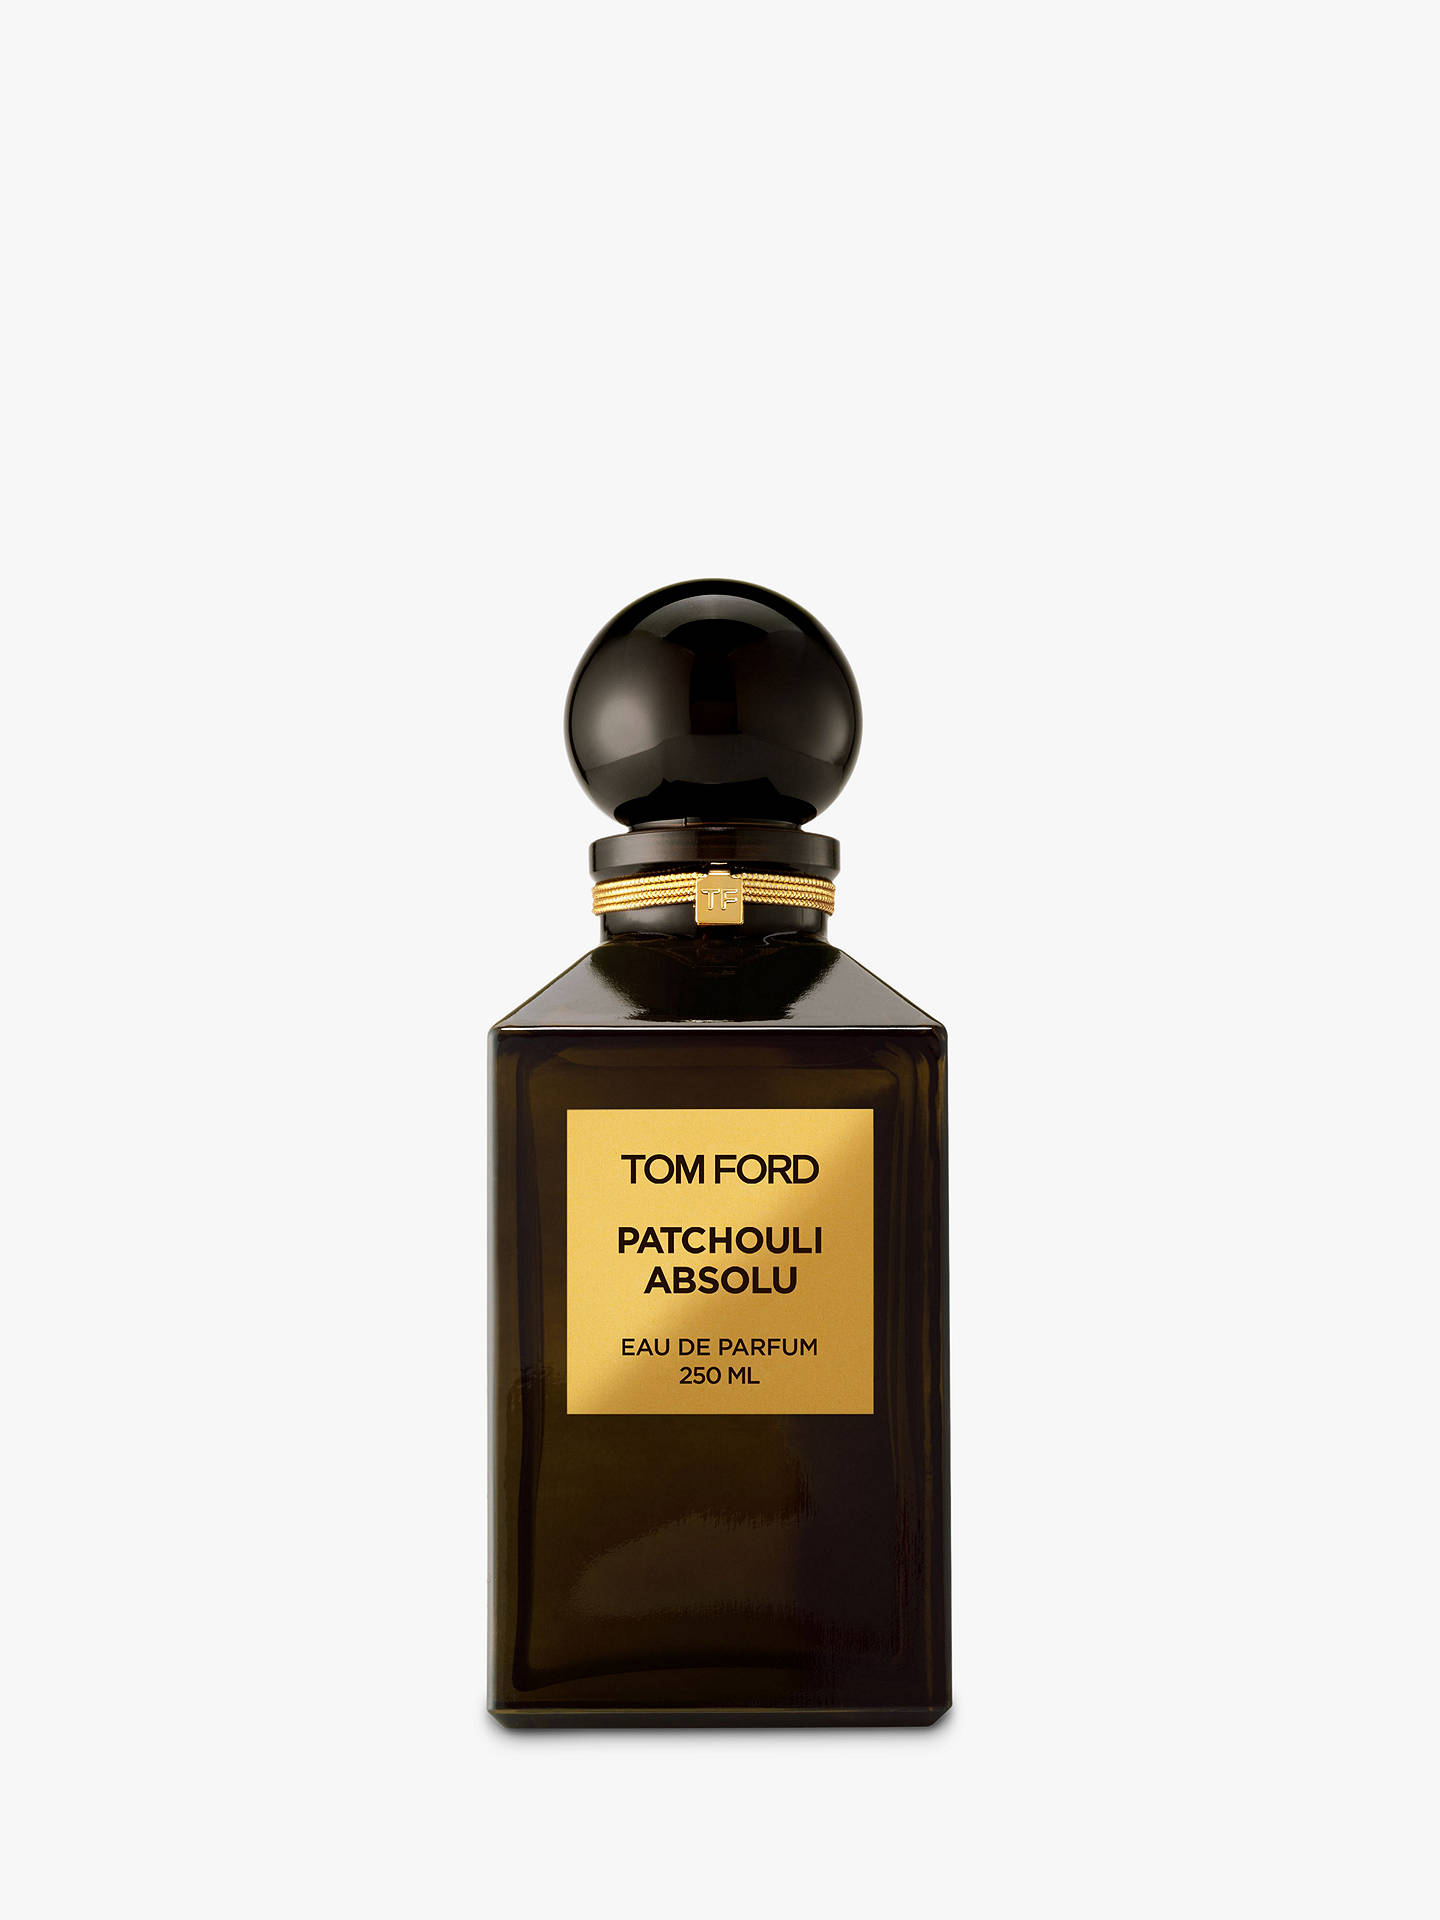 TOM FORD Private Blend Patchouli Absolu Eau de Parfum